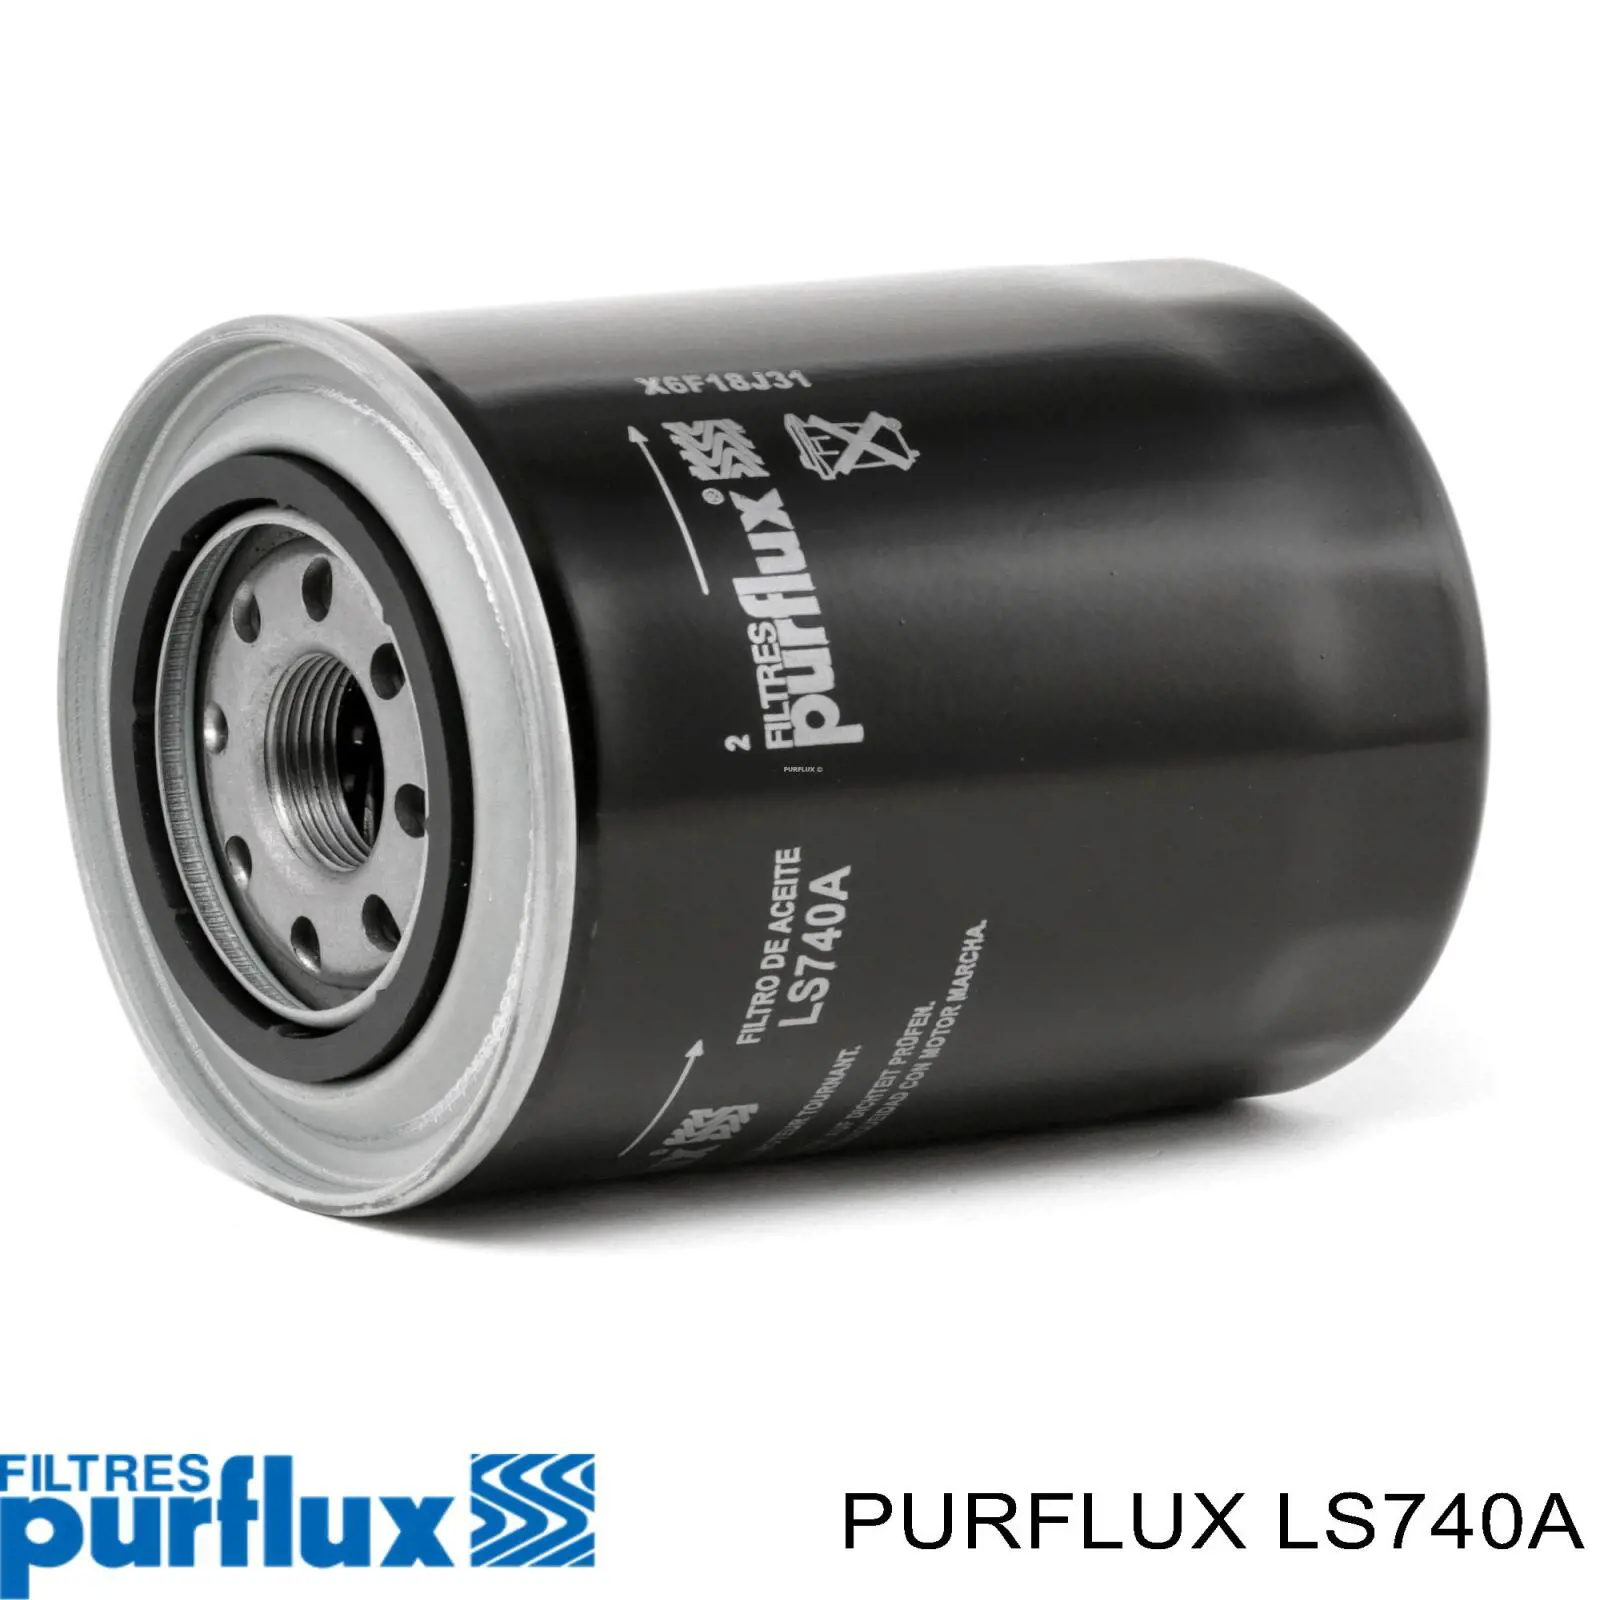 Filtro de aceite LS740A Purflux